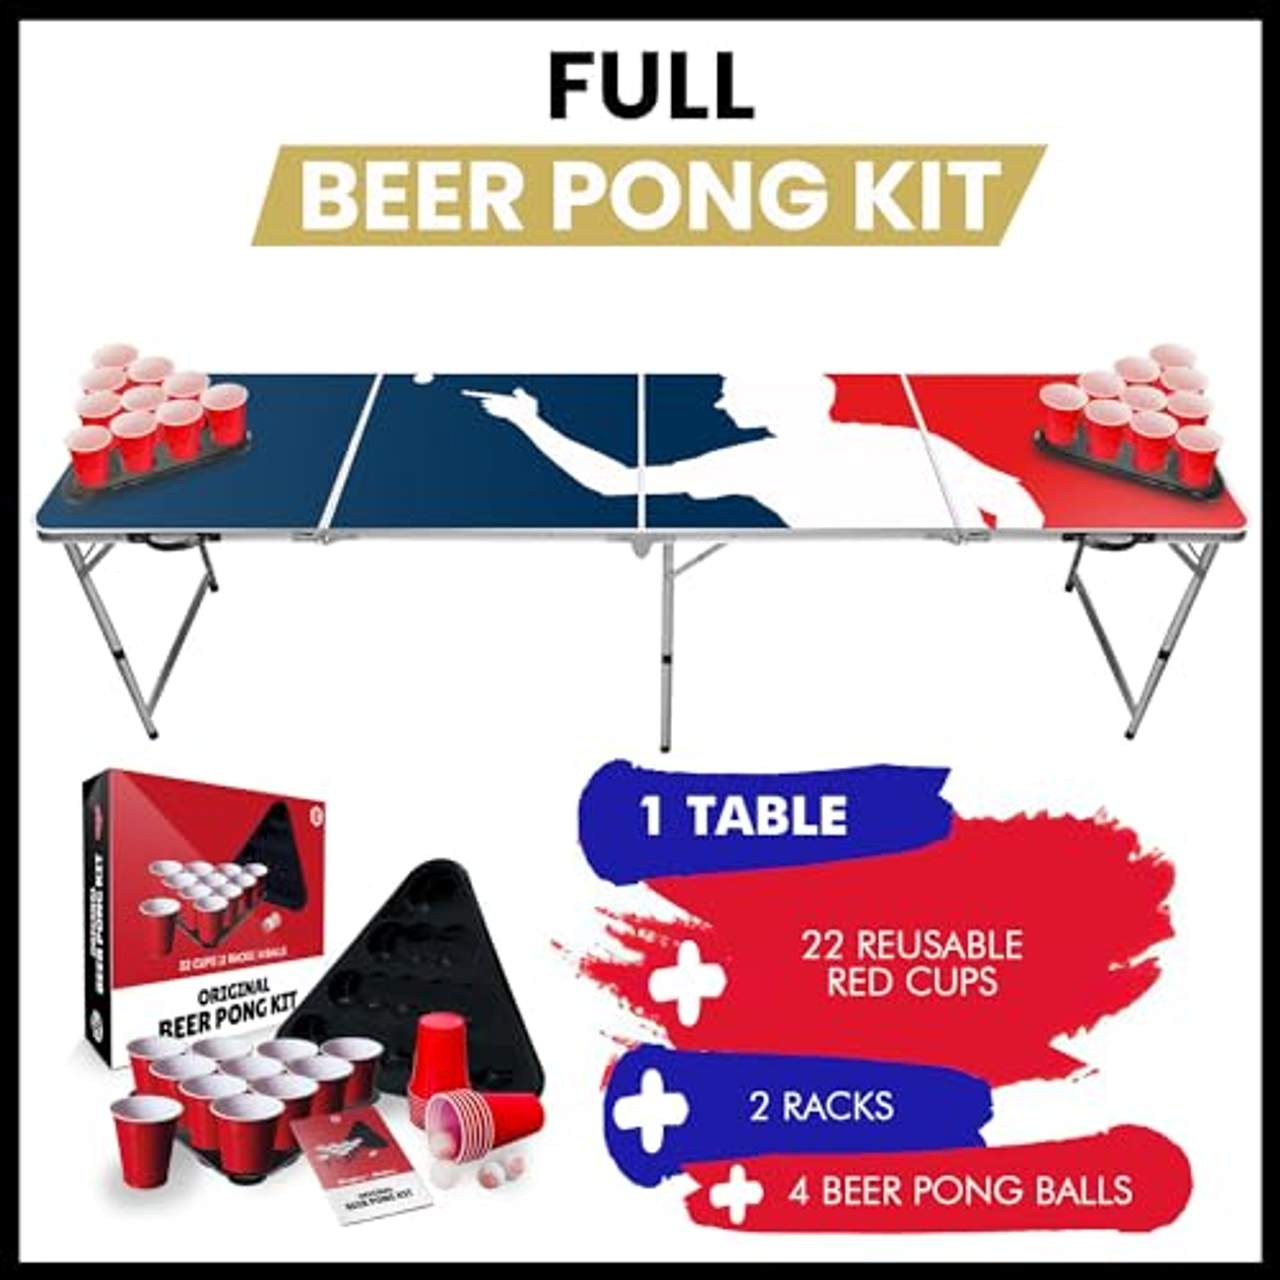 Offizieller Player Beer Pong Tisch 